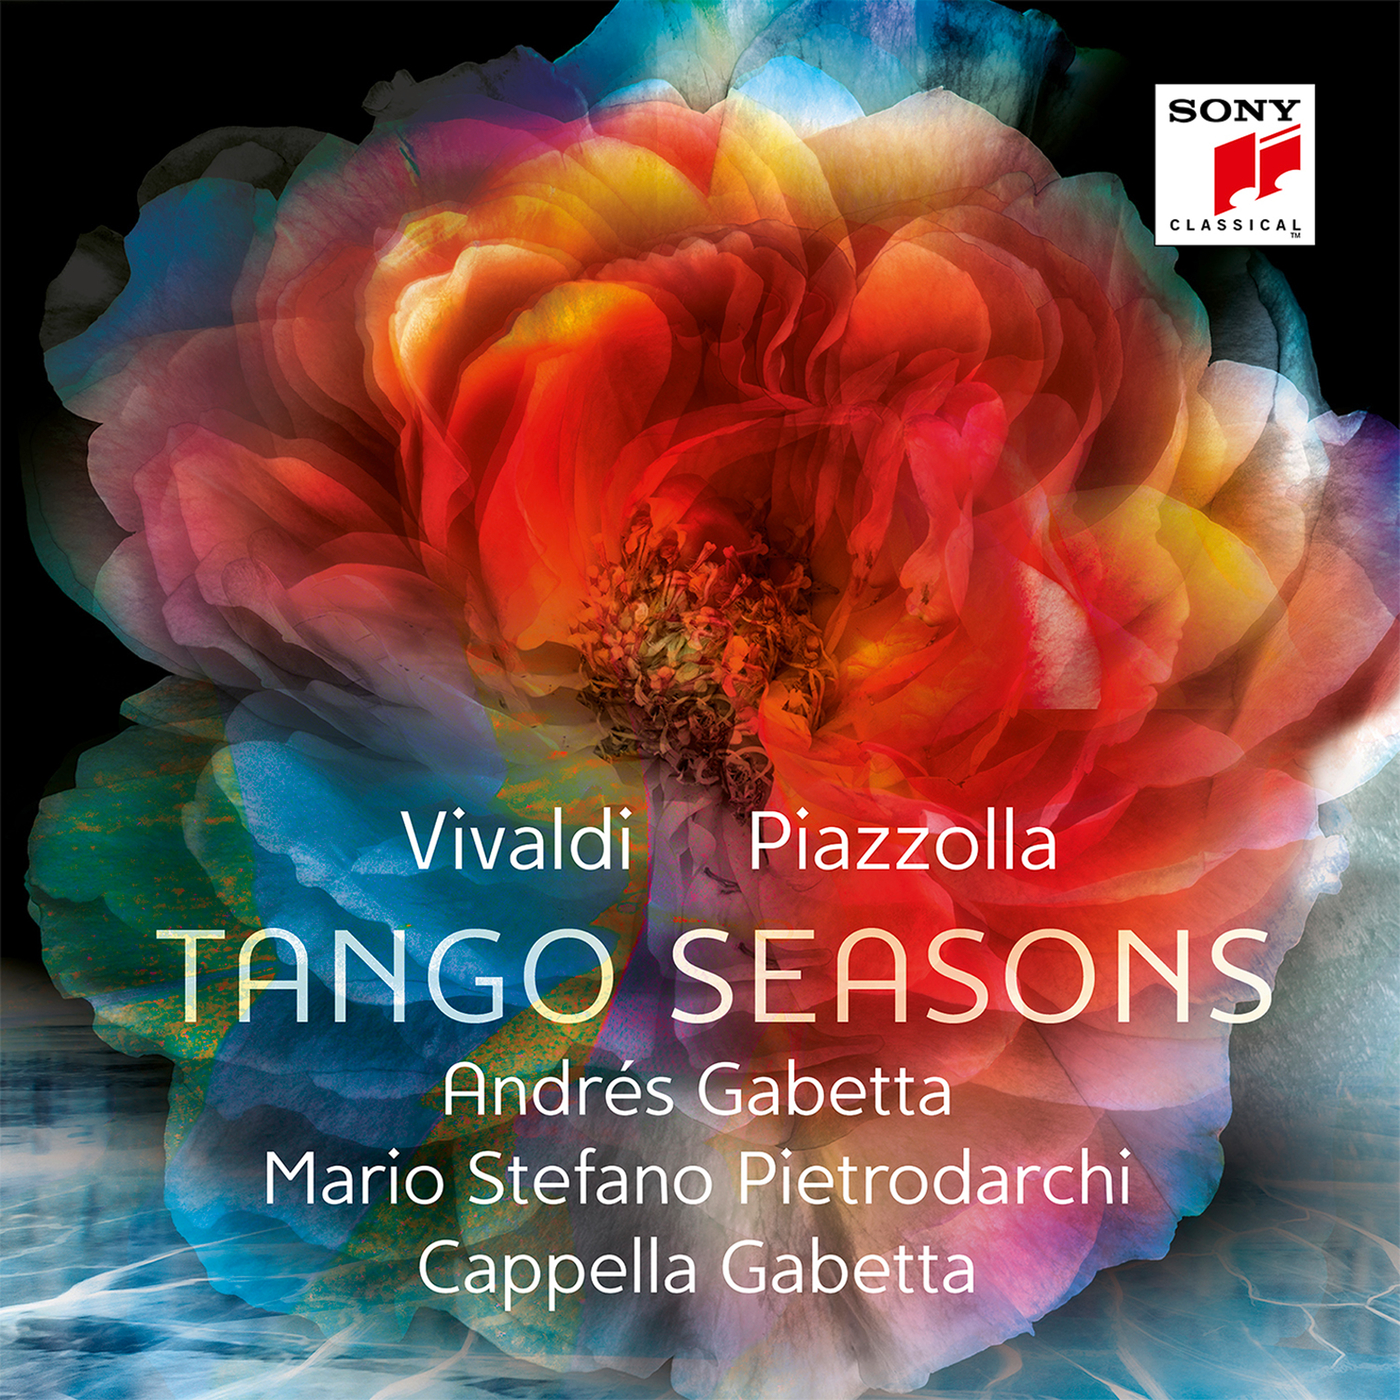 The Four Seasons - Violin Concerto in F Minor, RV 297, "Winter": I. Allegro non molto